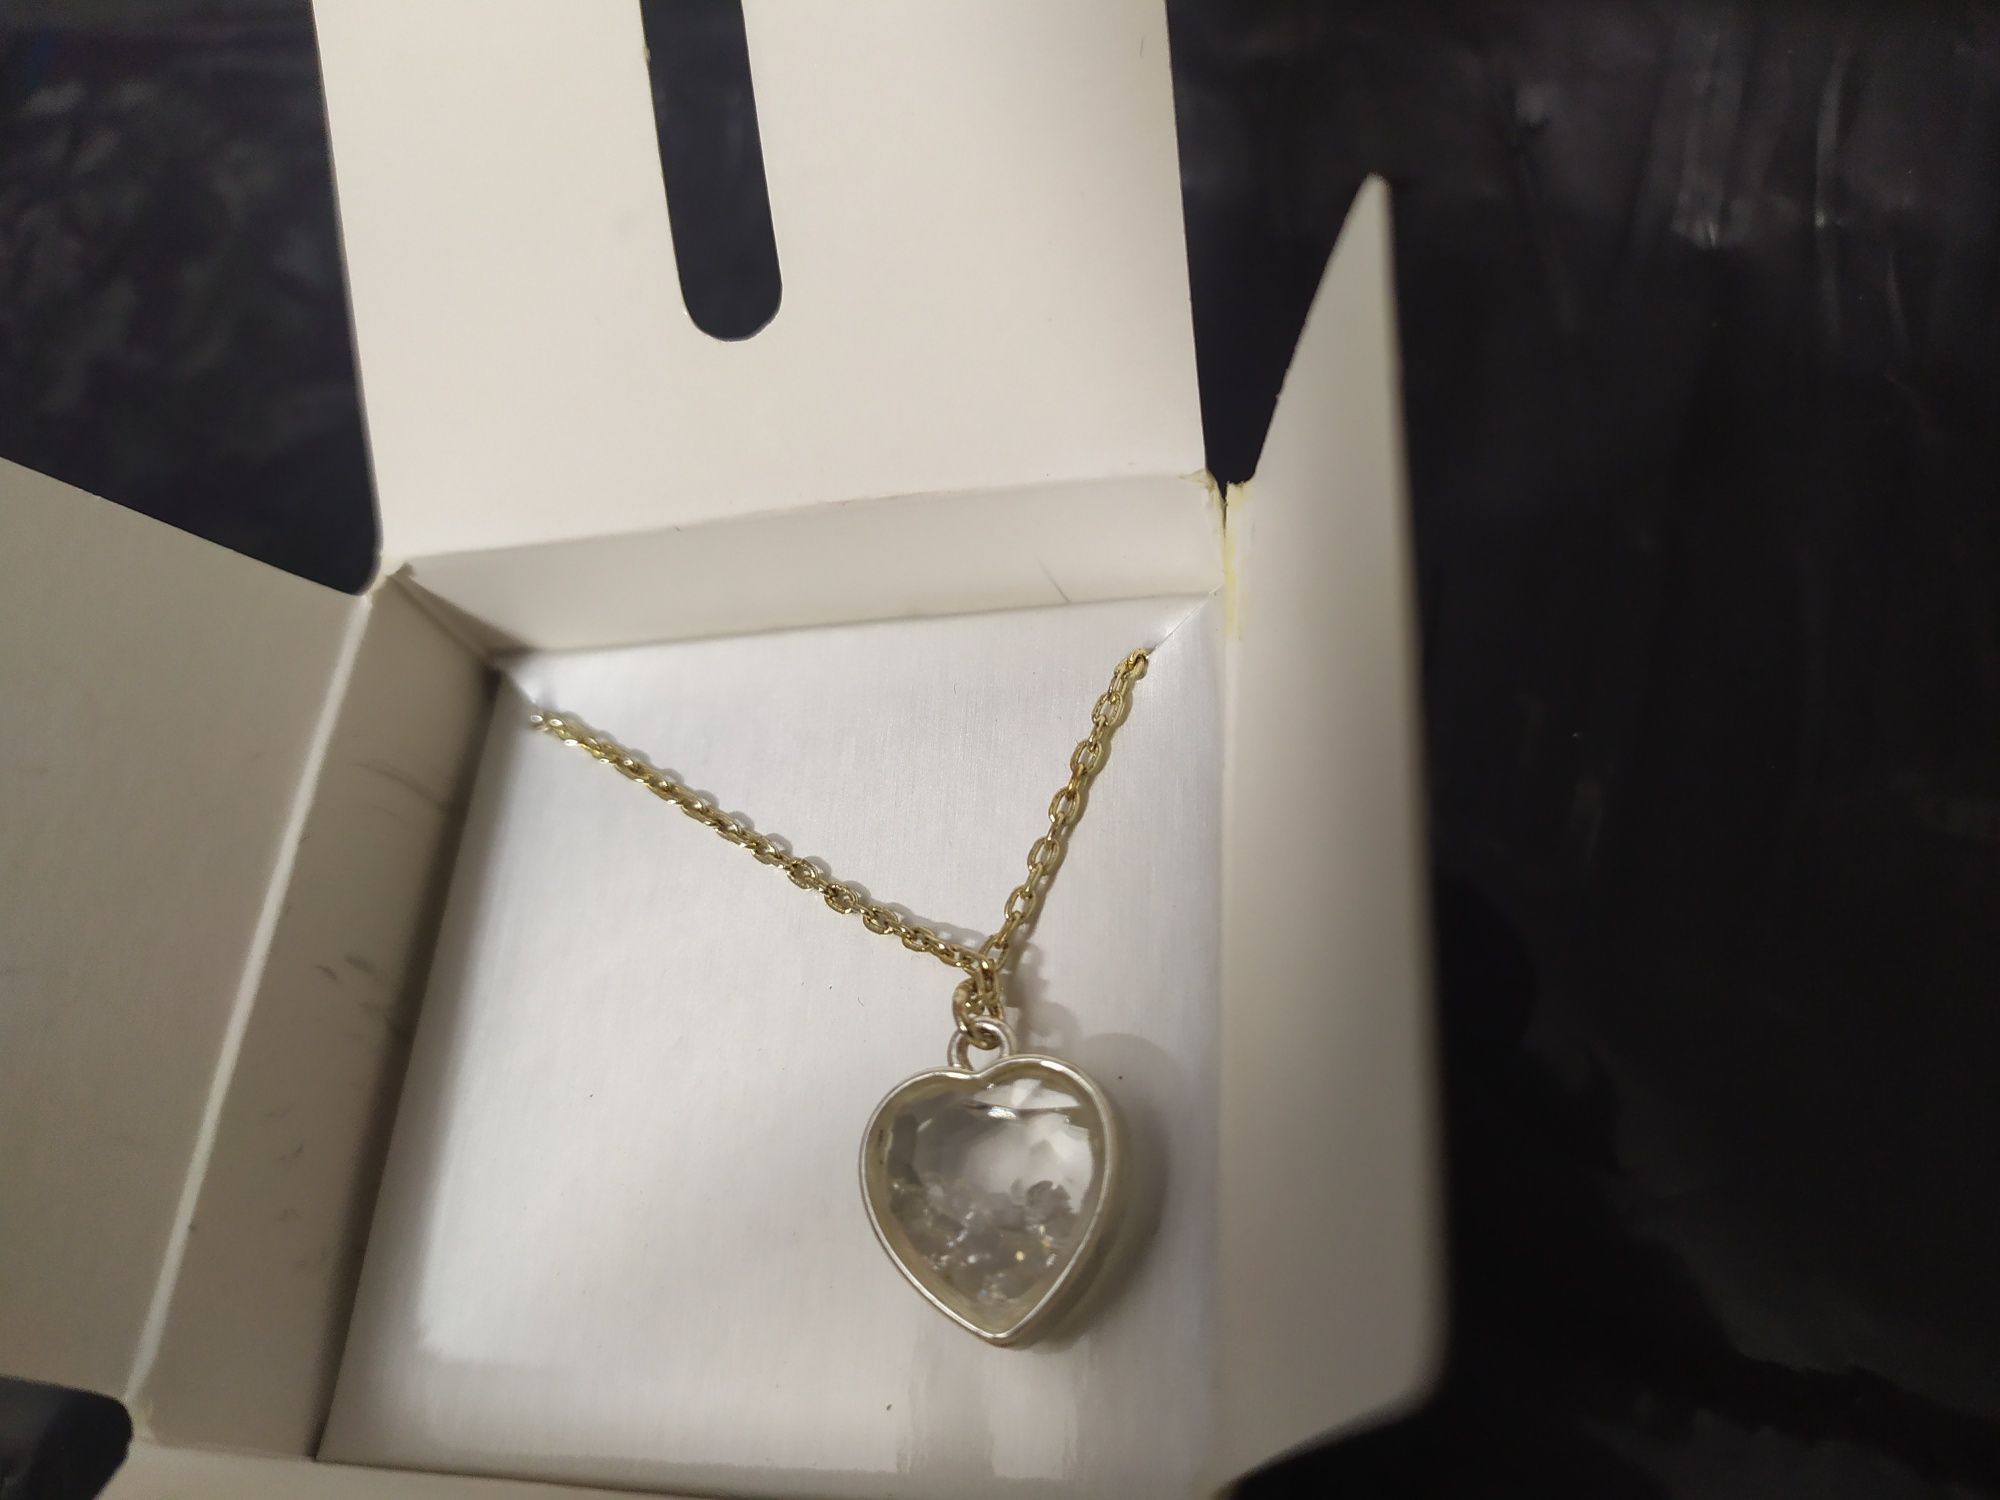 Łańcuszek z przywieszką Avon Mirabella Heart necklace crystal coloured